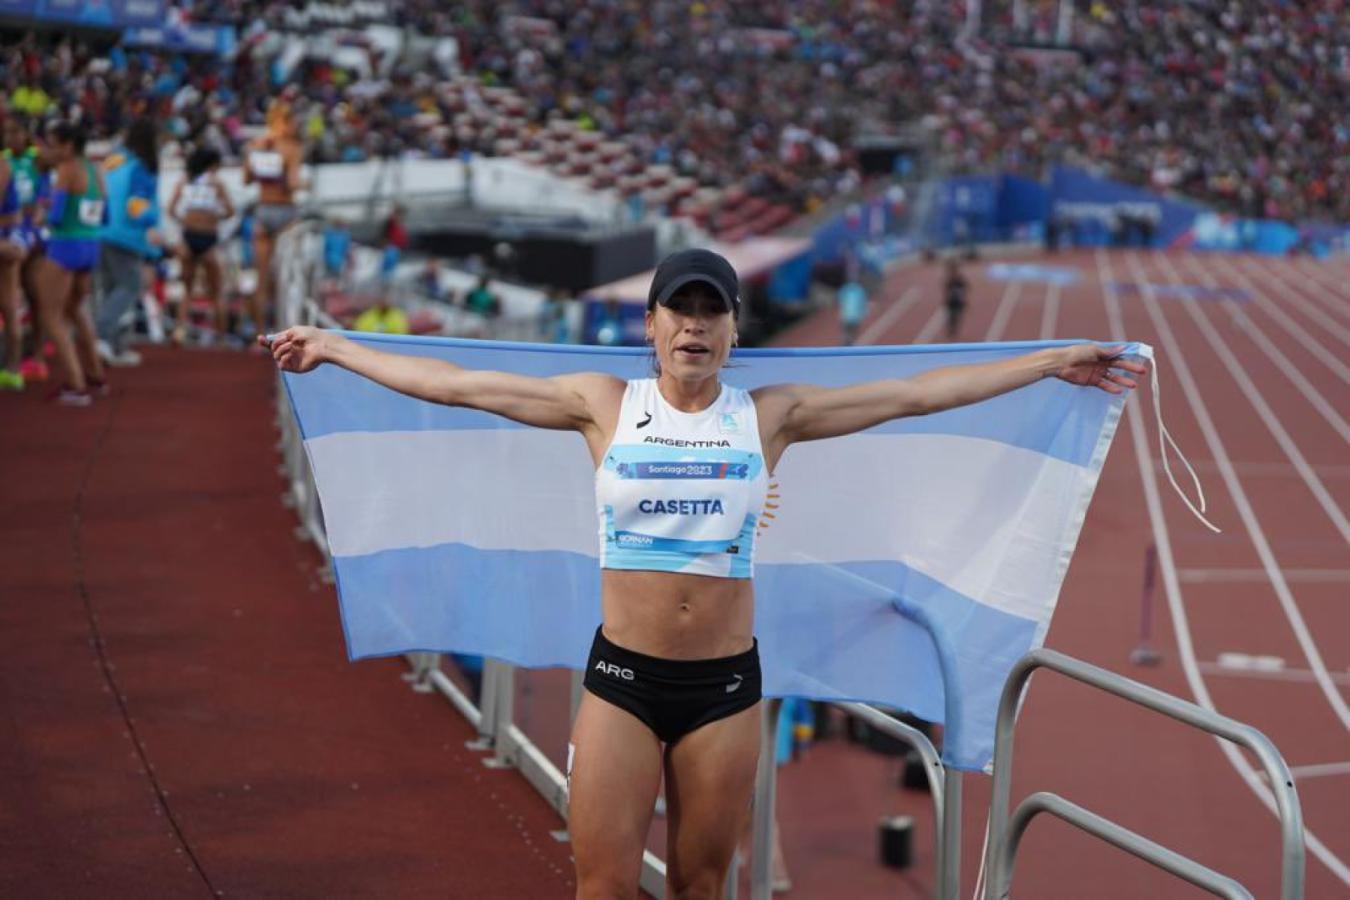 Imagen Belén Casetta: oro con récord panamericano apenas 6 meses después de ser mamá.